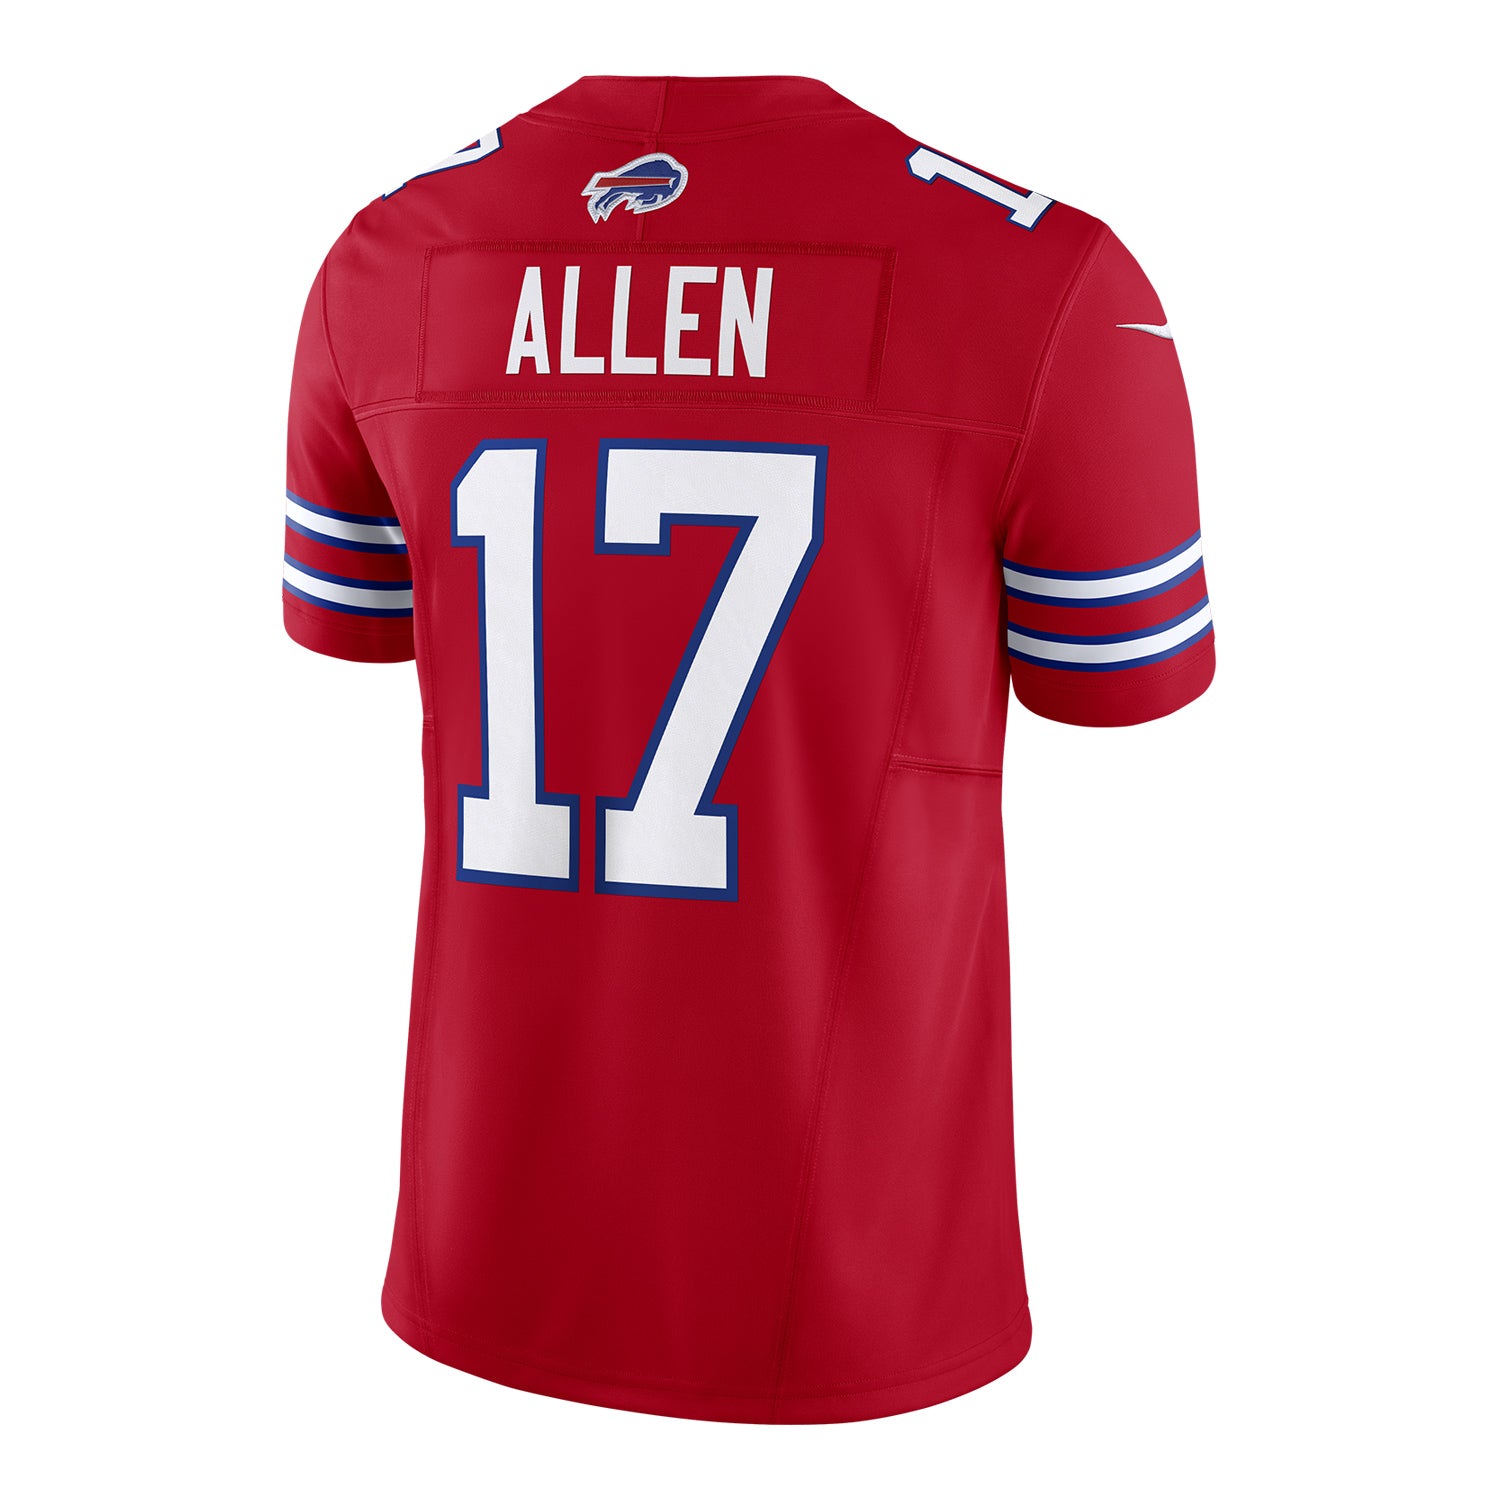 Blue Nike NFL Buffalo Bills Allen #17 Jersey Women's